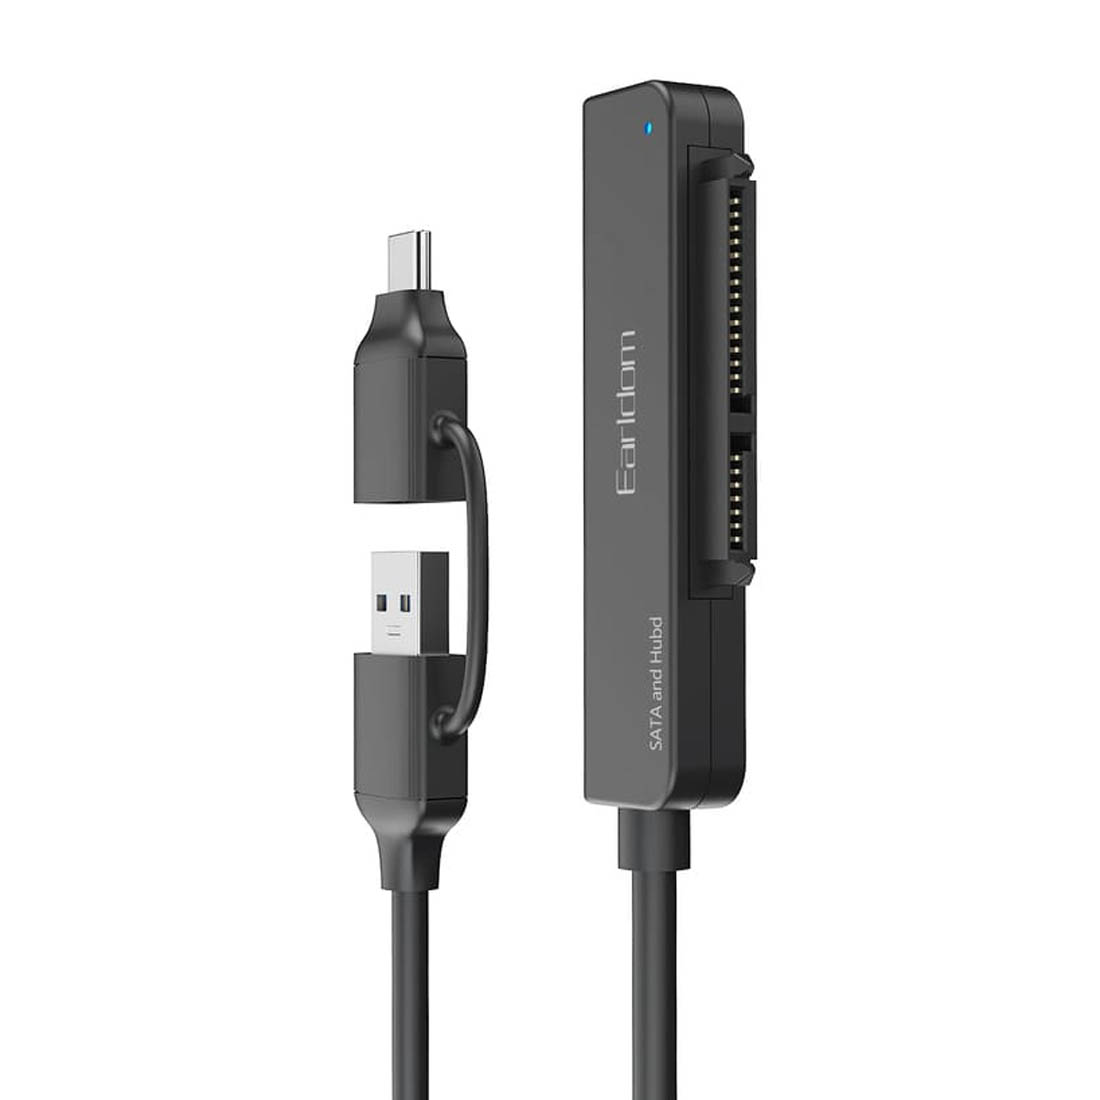 Переходник (кабель) Earldom ET-W36 2в1 USB-C/USB - SATA, для подключения HDD / SSD, длина 50 см, цвет черный